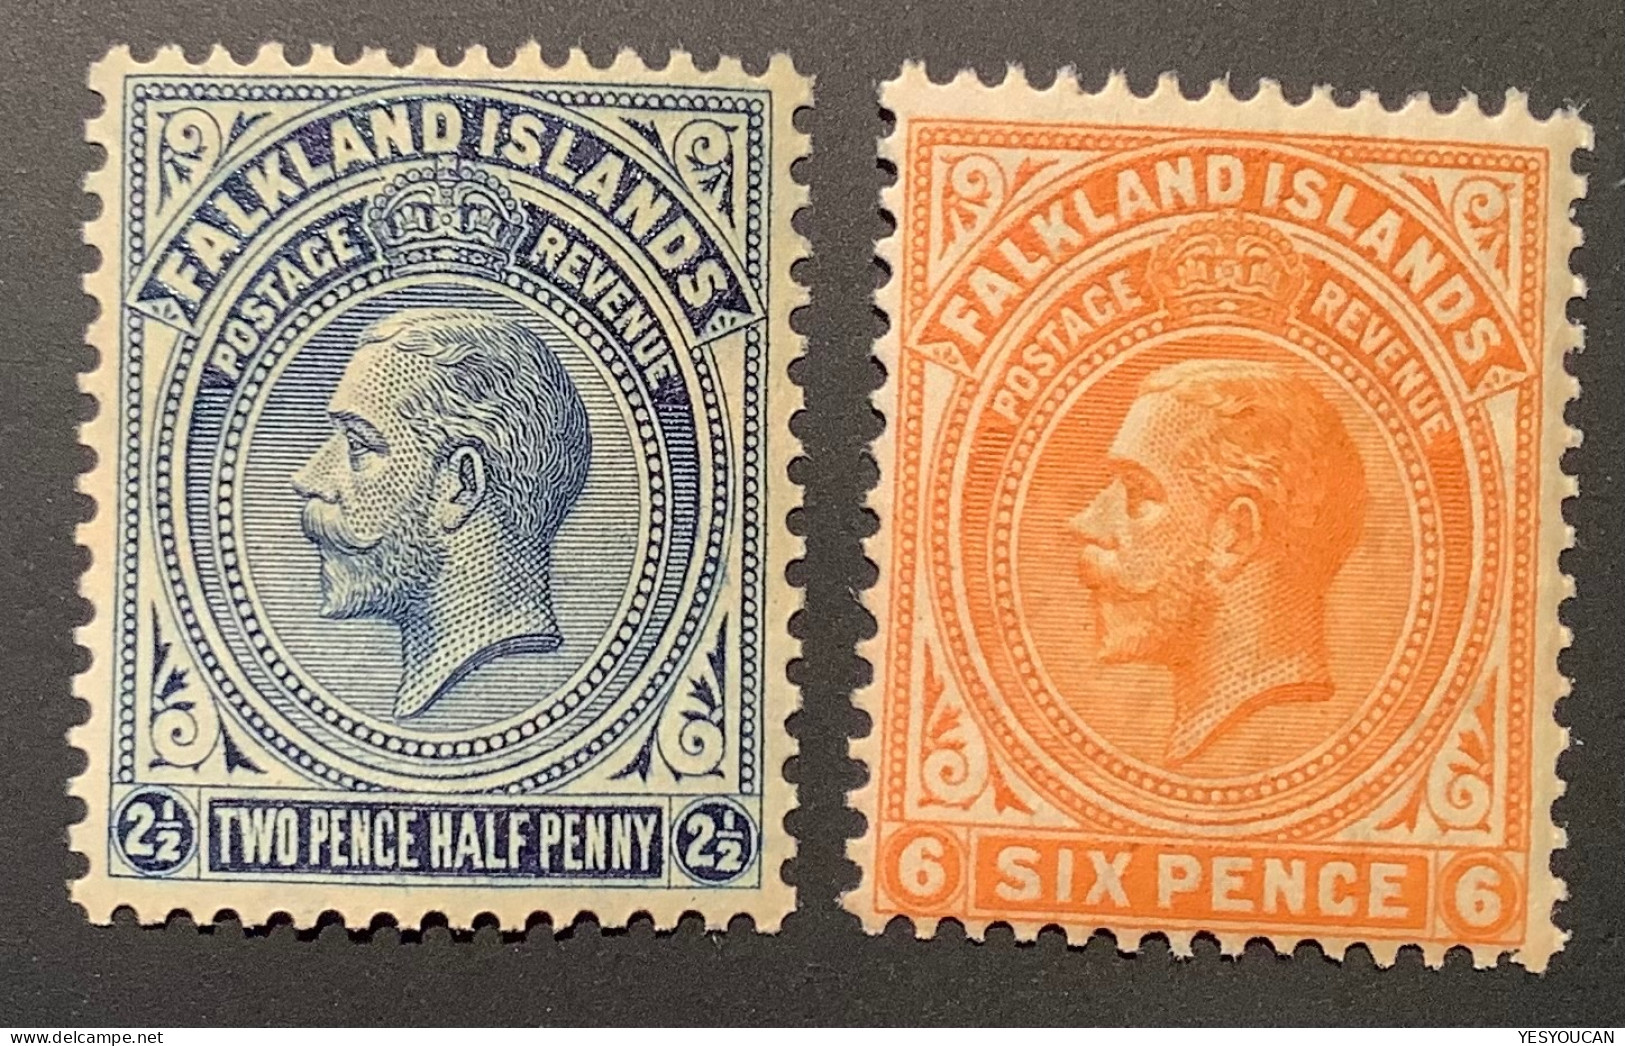 Falkland Islands SG76+78 Shade? VF MNH**, 1921-28 Wmk Script CA, 2 1/2d+6d  (Iles Falkland British Empire - Falkland Islands